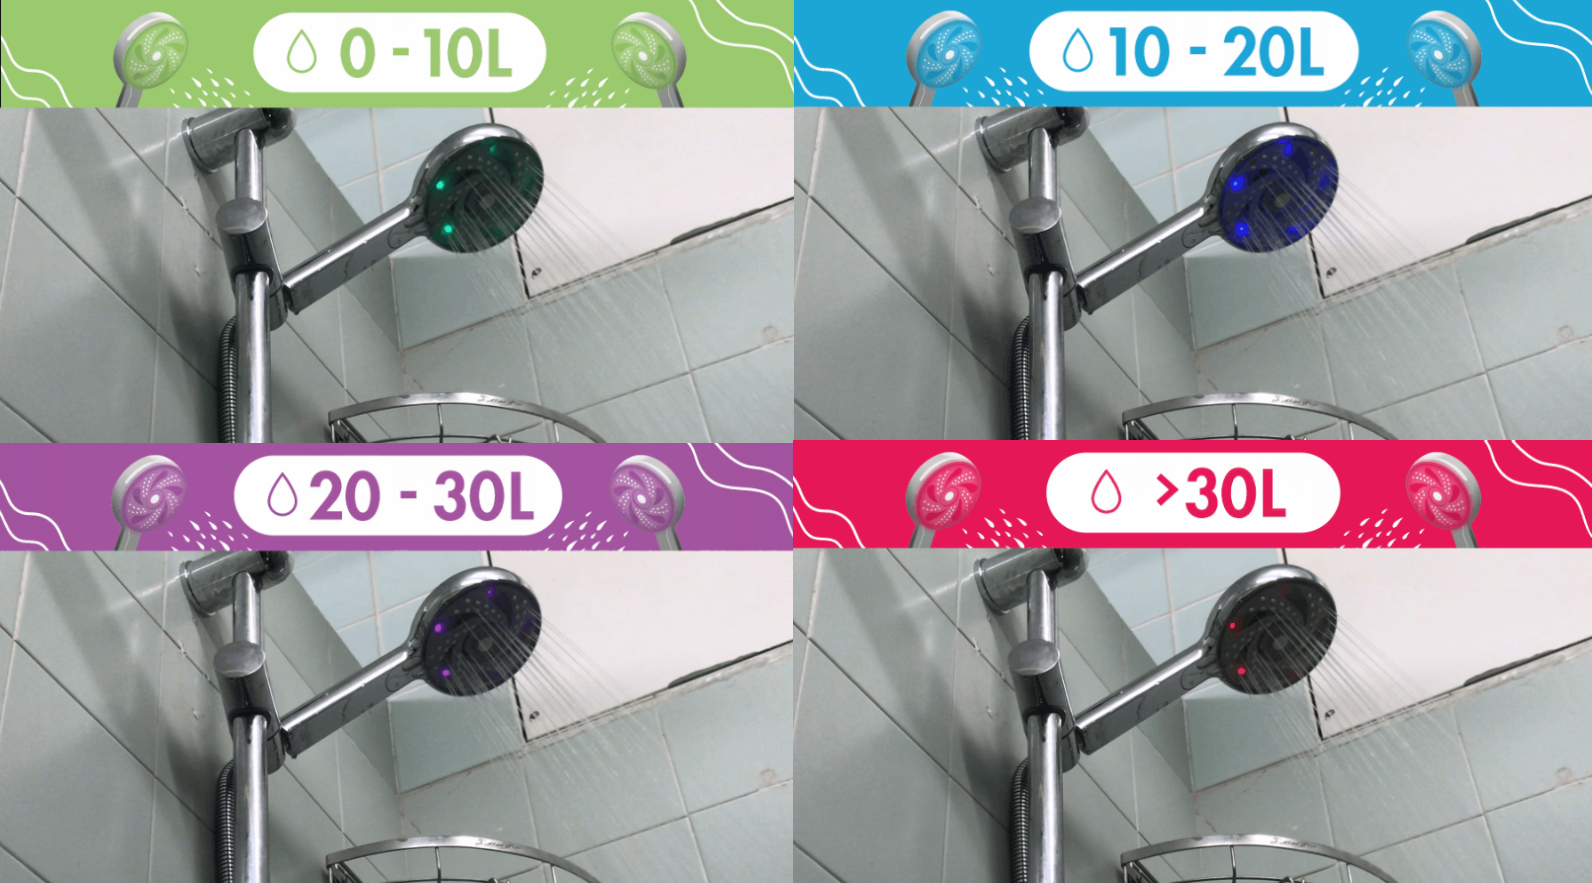 智能花灑頭內置水力驅動 LED 指示燈，可按照實際用水量轉換顏色